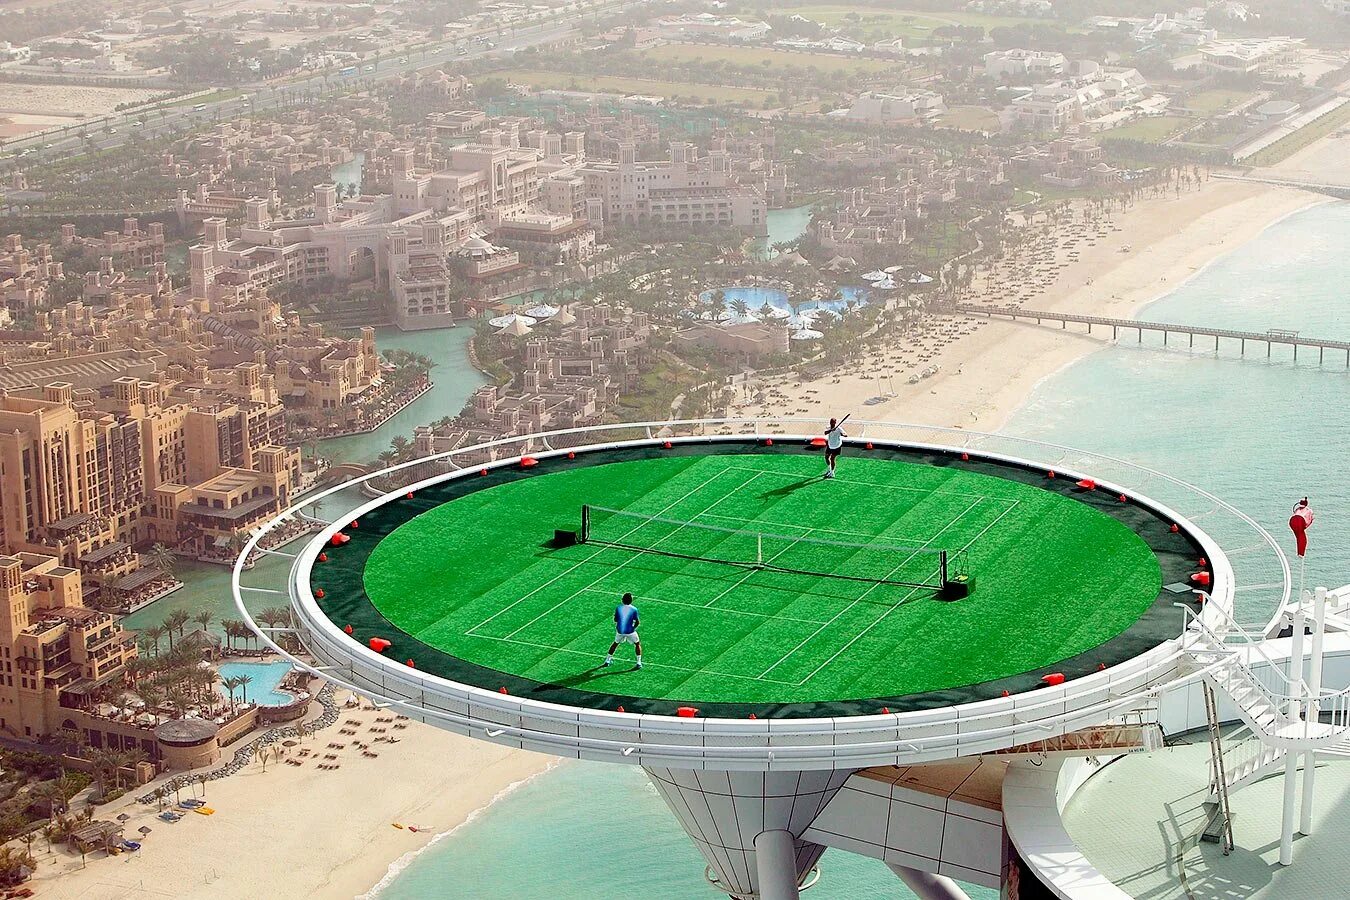 Бурдж Аль араб теннисный корт. Отель в Дубае Бурдж Аль араб теннисный корт. Теннисный корт на Бурдж-Эль-араб. Тенисеый Уорт на Бурж ал араб. Жизнь стадиона